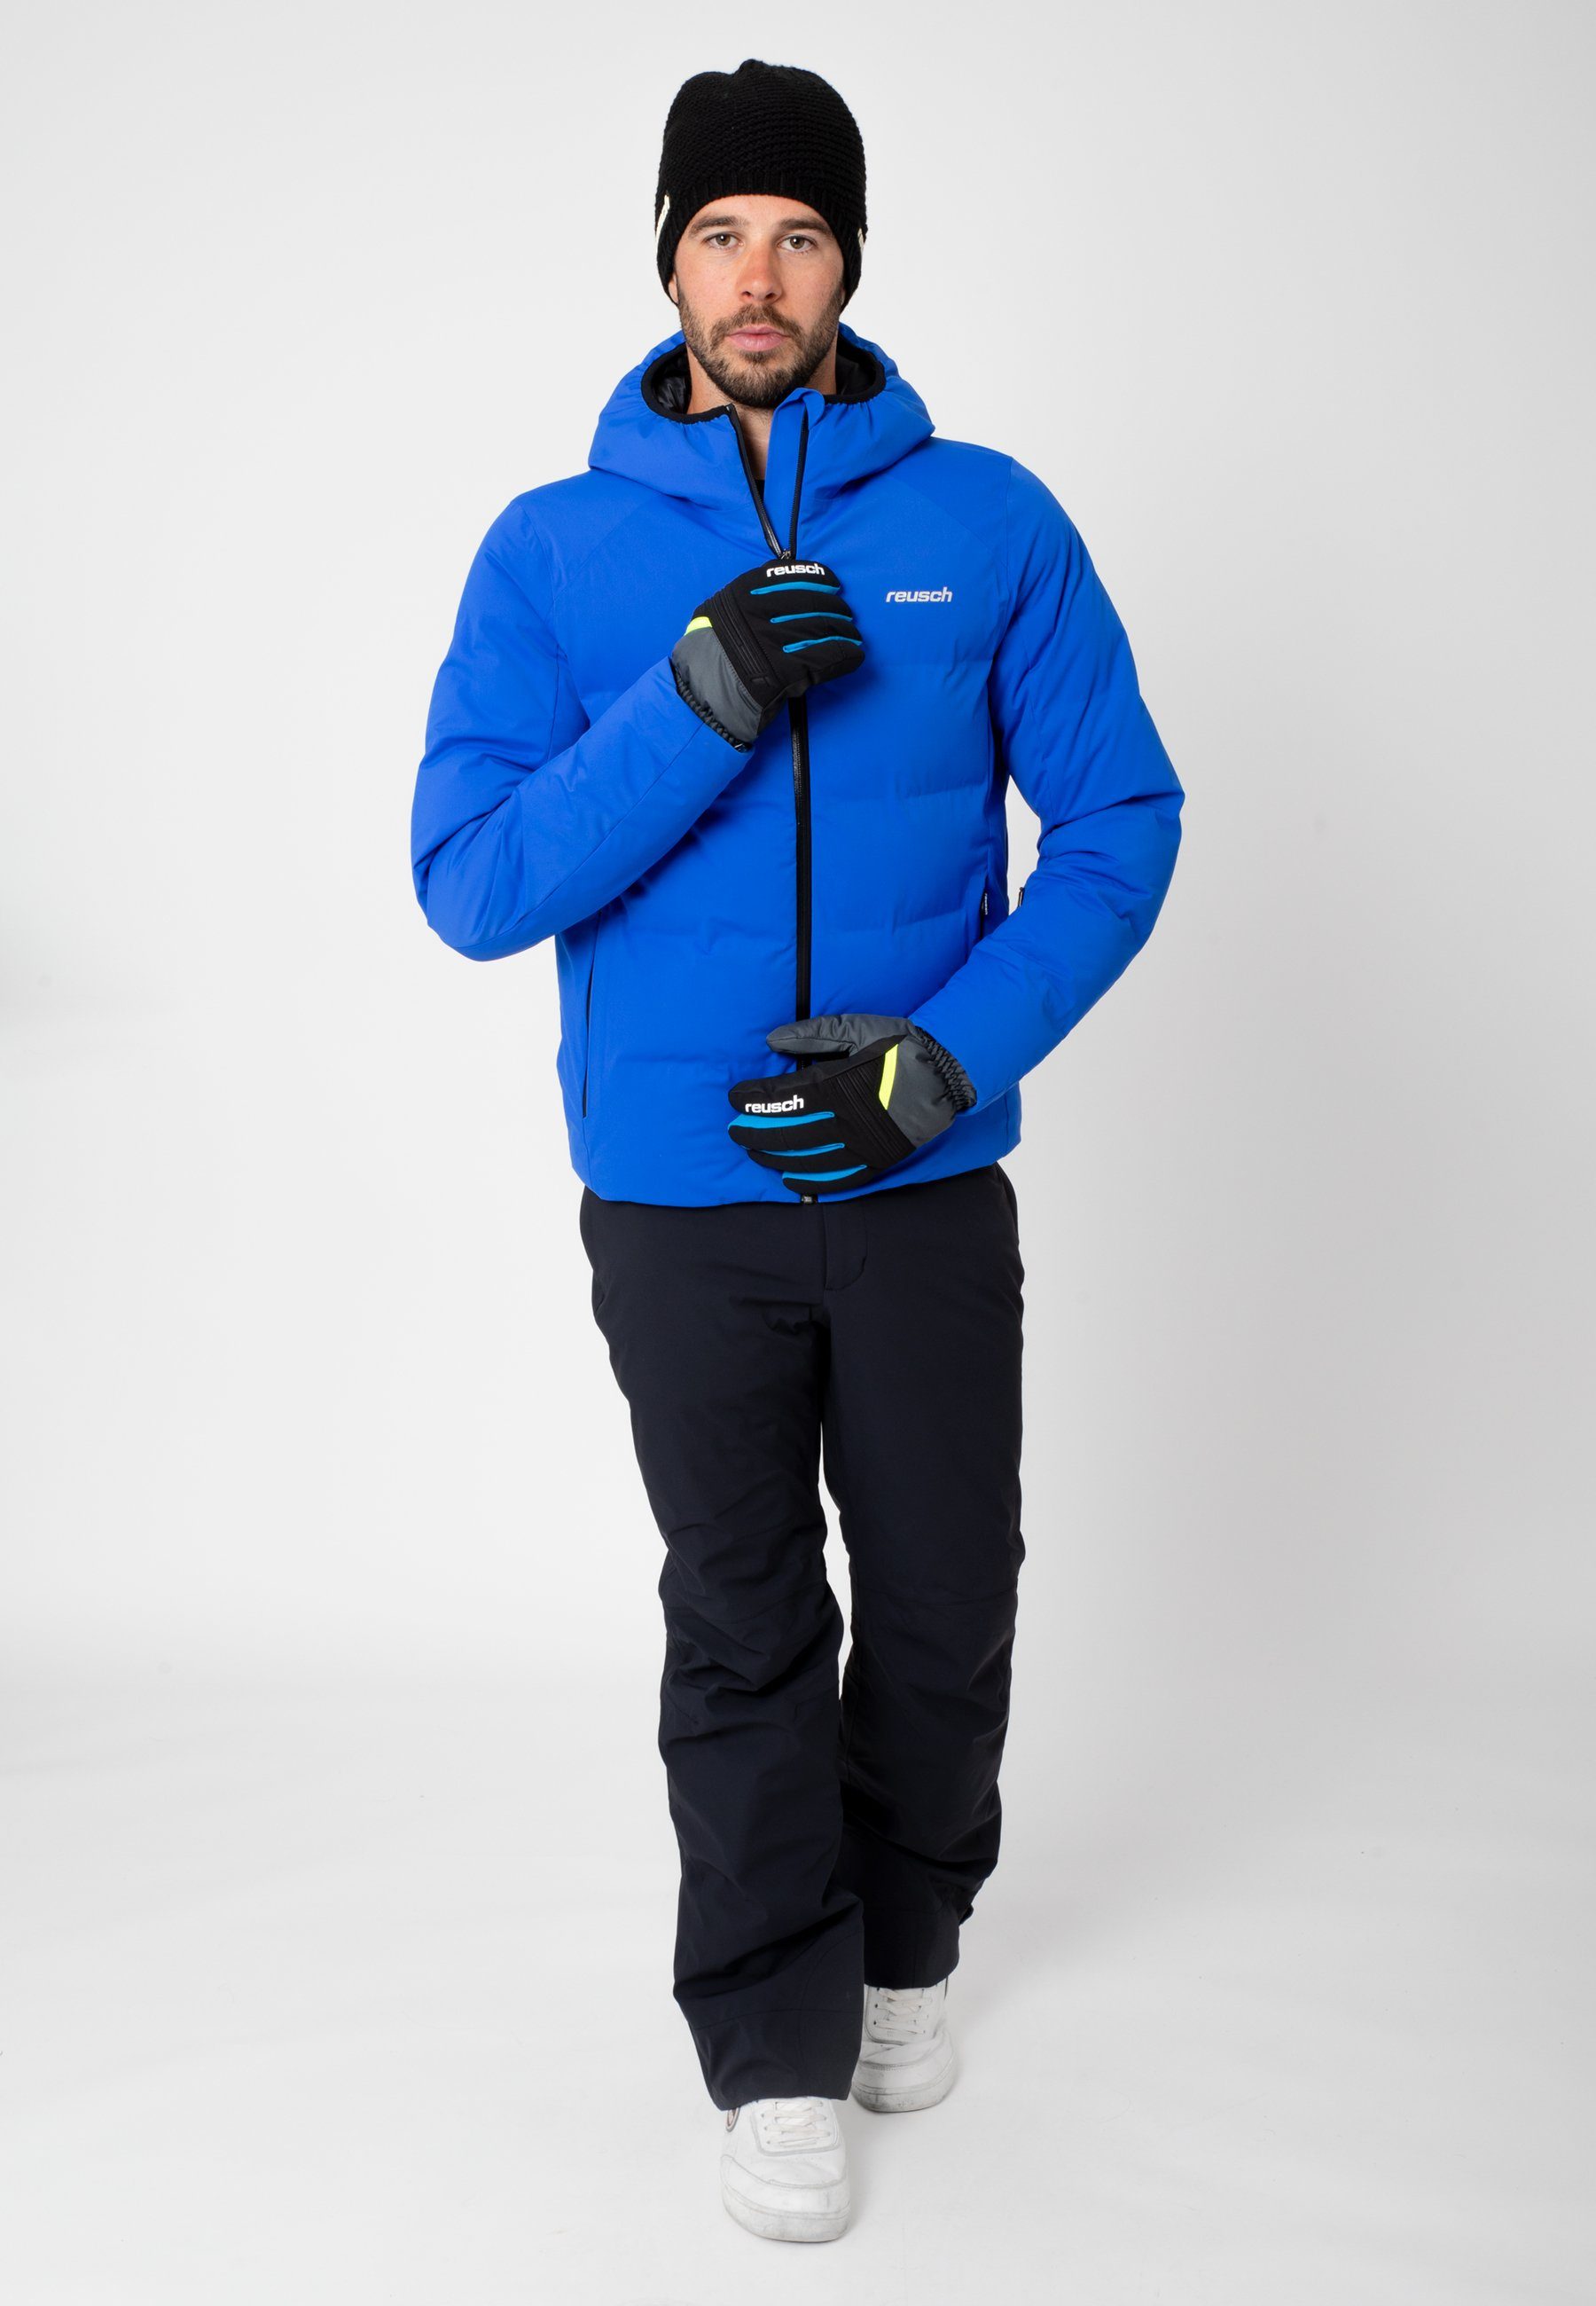 Reusch Skihandschuhe Baldo R-TEX XT grau-gelb warm und wasserdicht